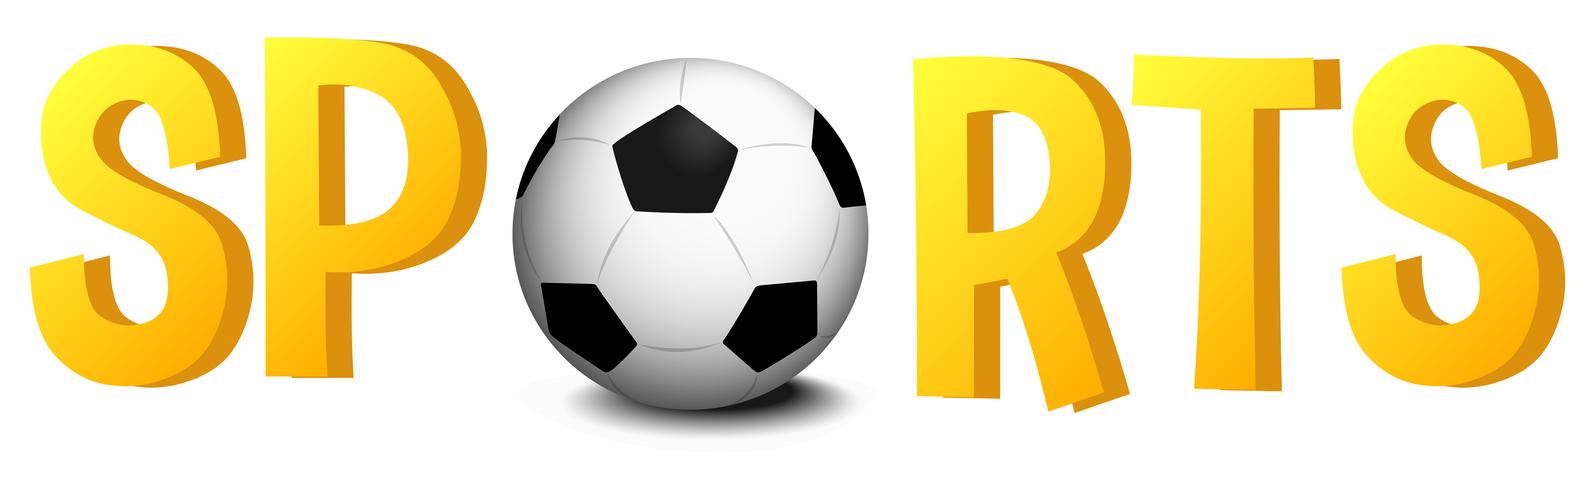 Design de fonte com palavra esportes com bola de futebol vetor